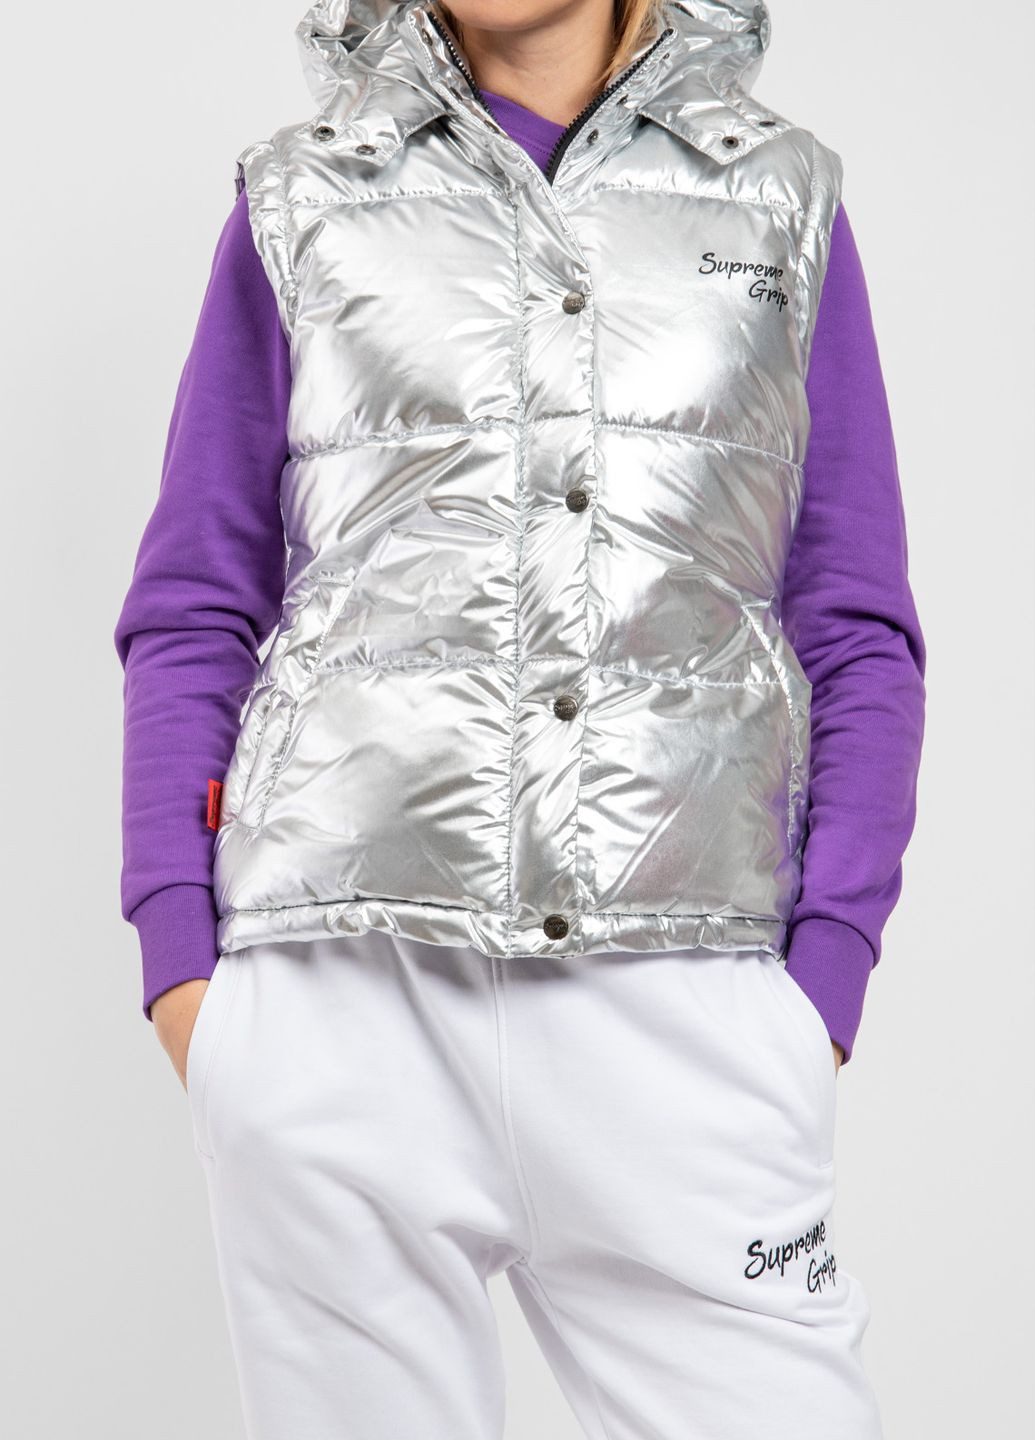 Серебряная демисезонная серебристая куртка со съемными рукавами Supreme Grip